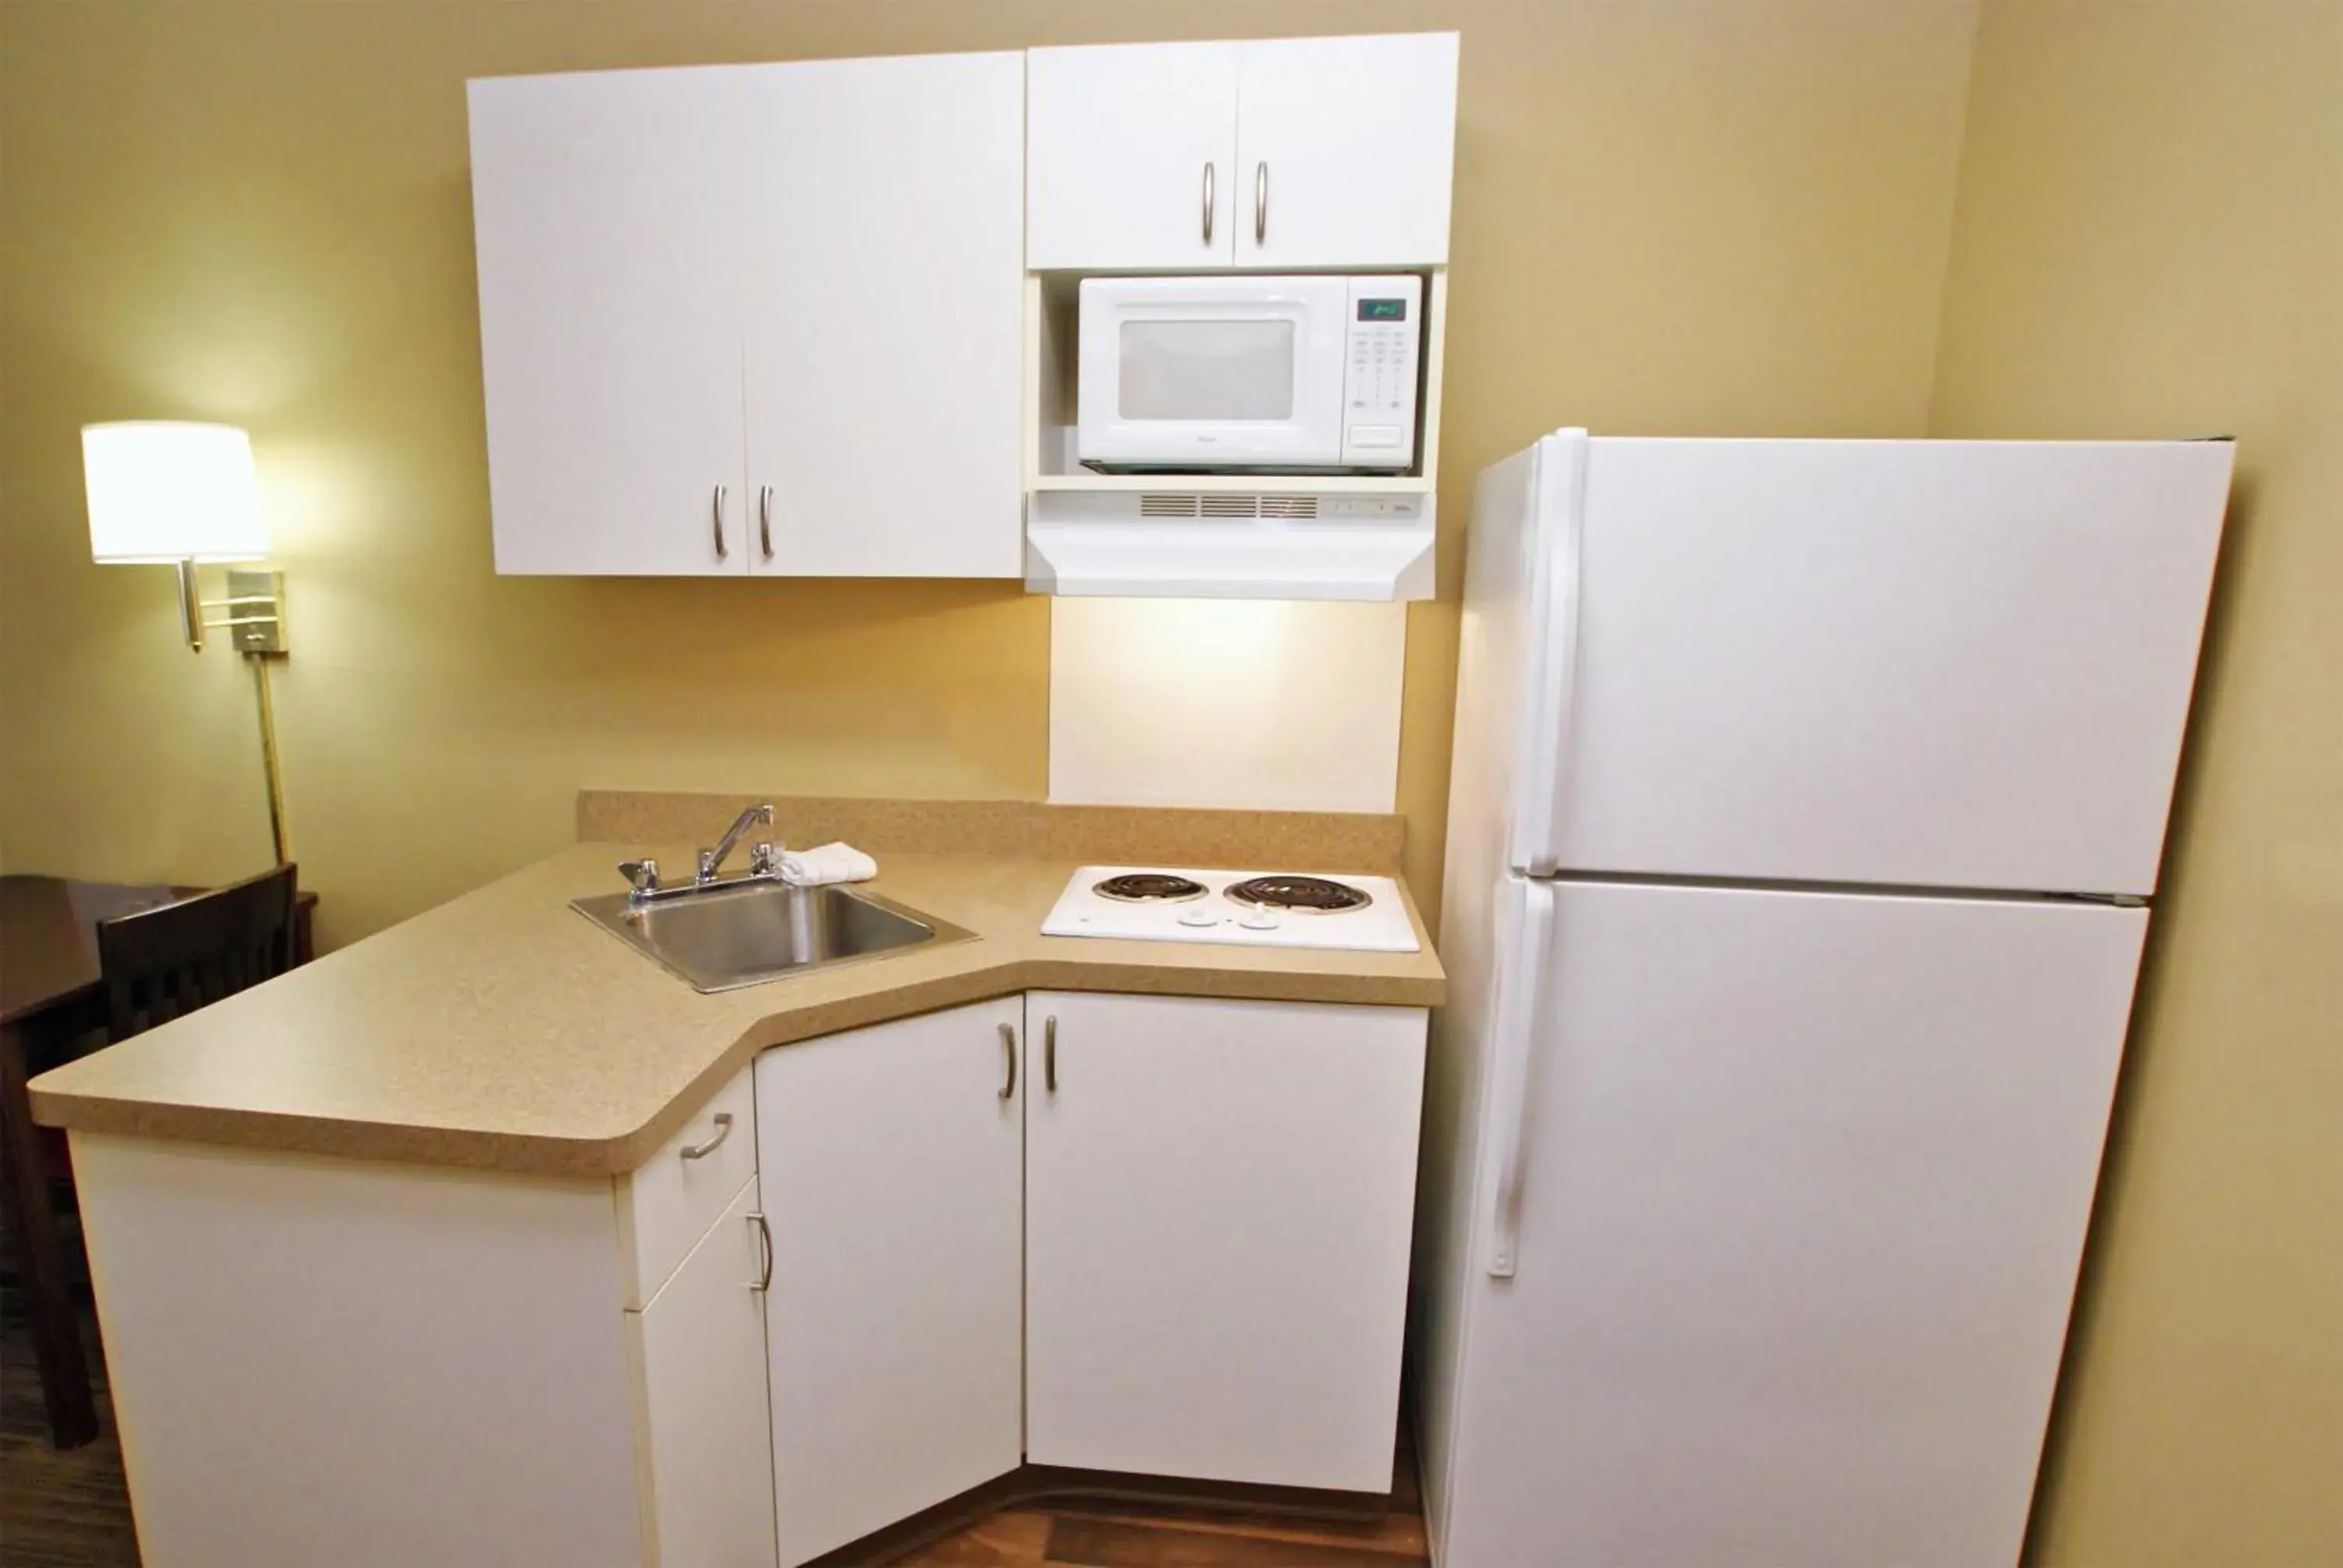 Kitchen or kitchenette, Kitchen/Kitchenette in Extended Stay America Suites - Washington, DC - Landover